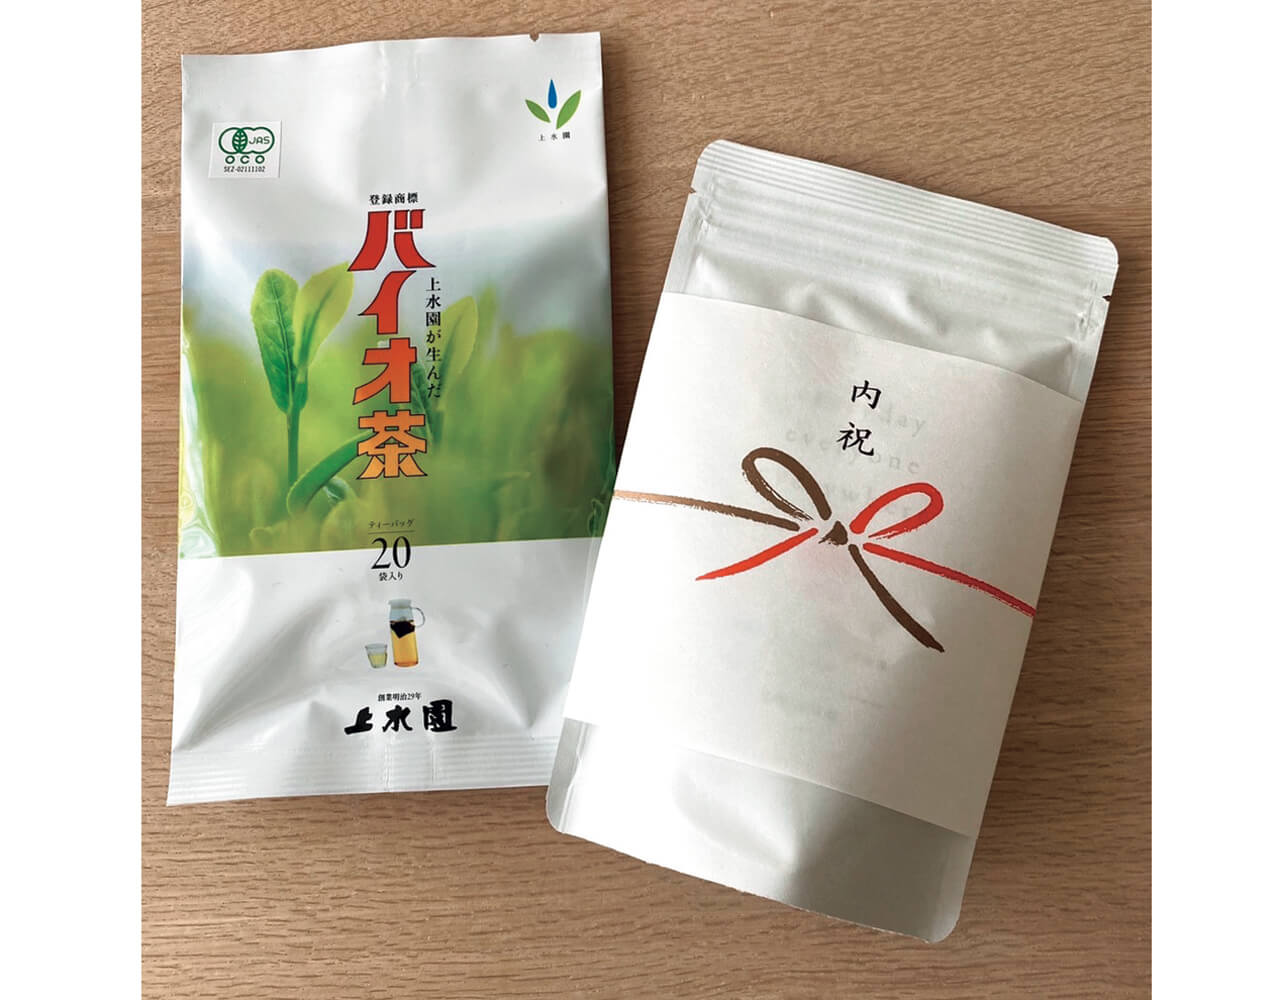 内祝いの品は地元の宮崎県で親しまれている「バイオ茶」をセレクト。